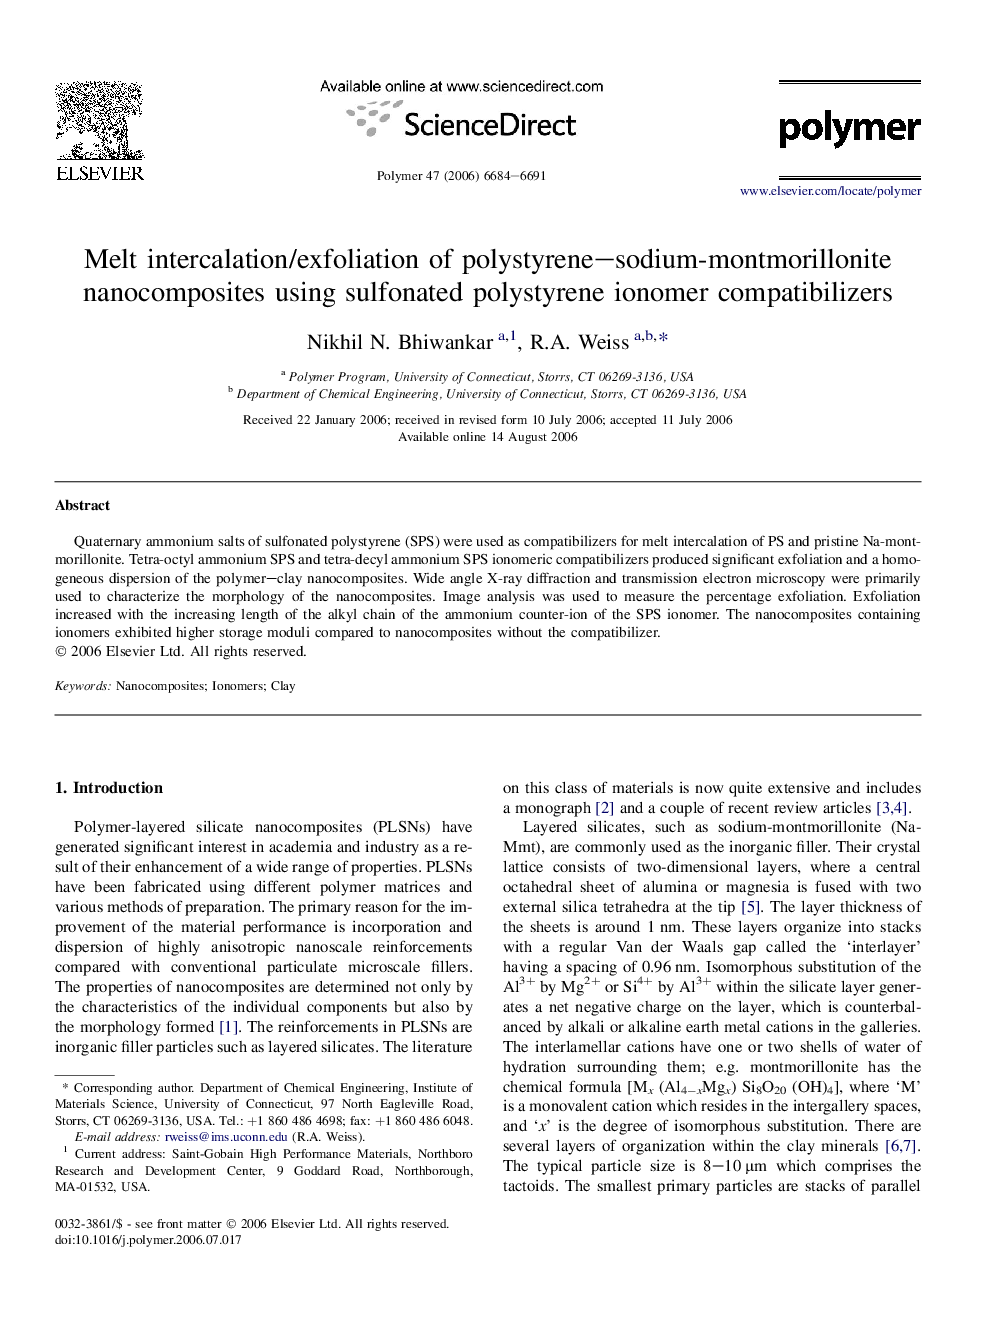 Melt intercalation/exfoliation of polystyrene-sodium-montmorillonite nanocomposites using sulfonated polystyrene ionomer compatibilizers